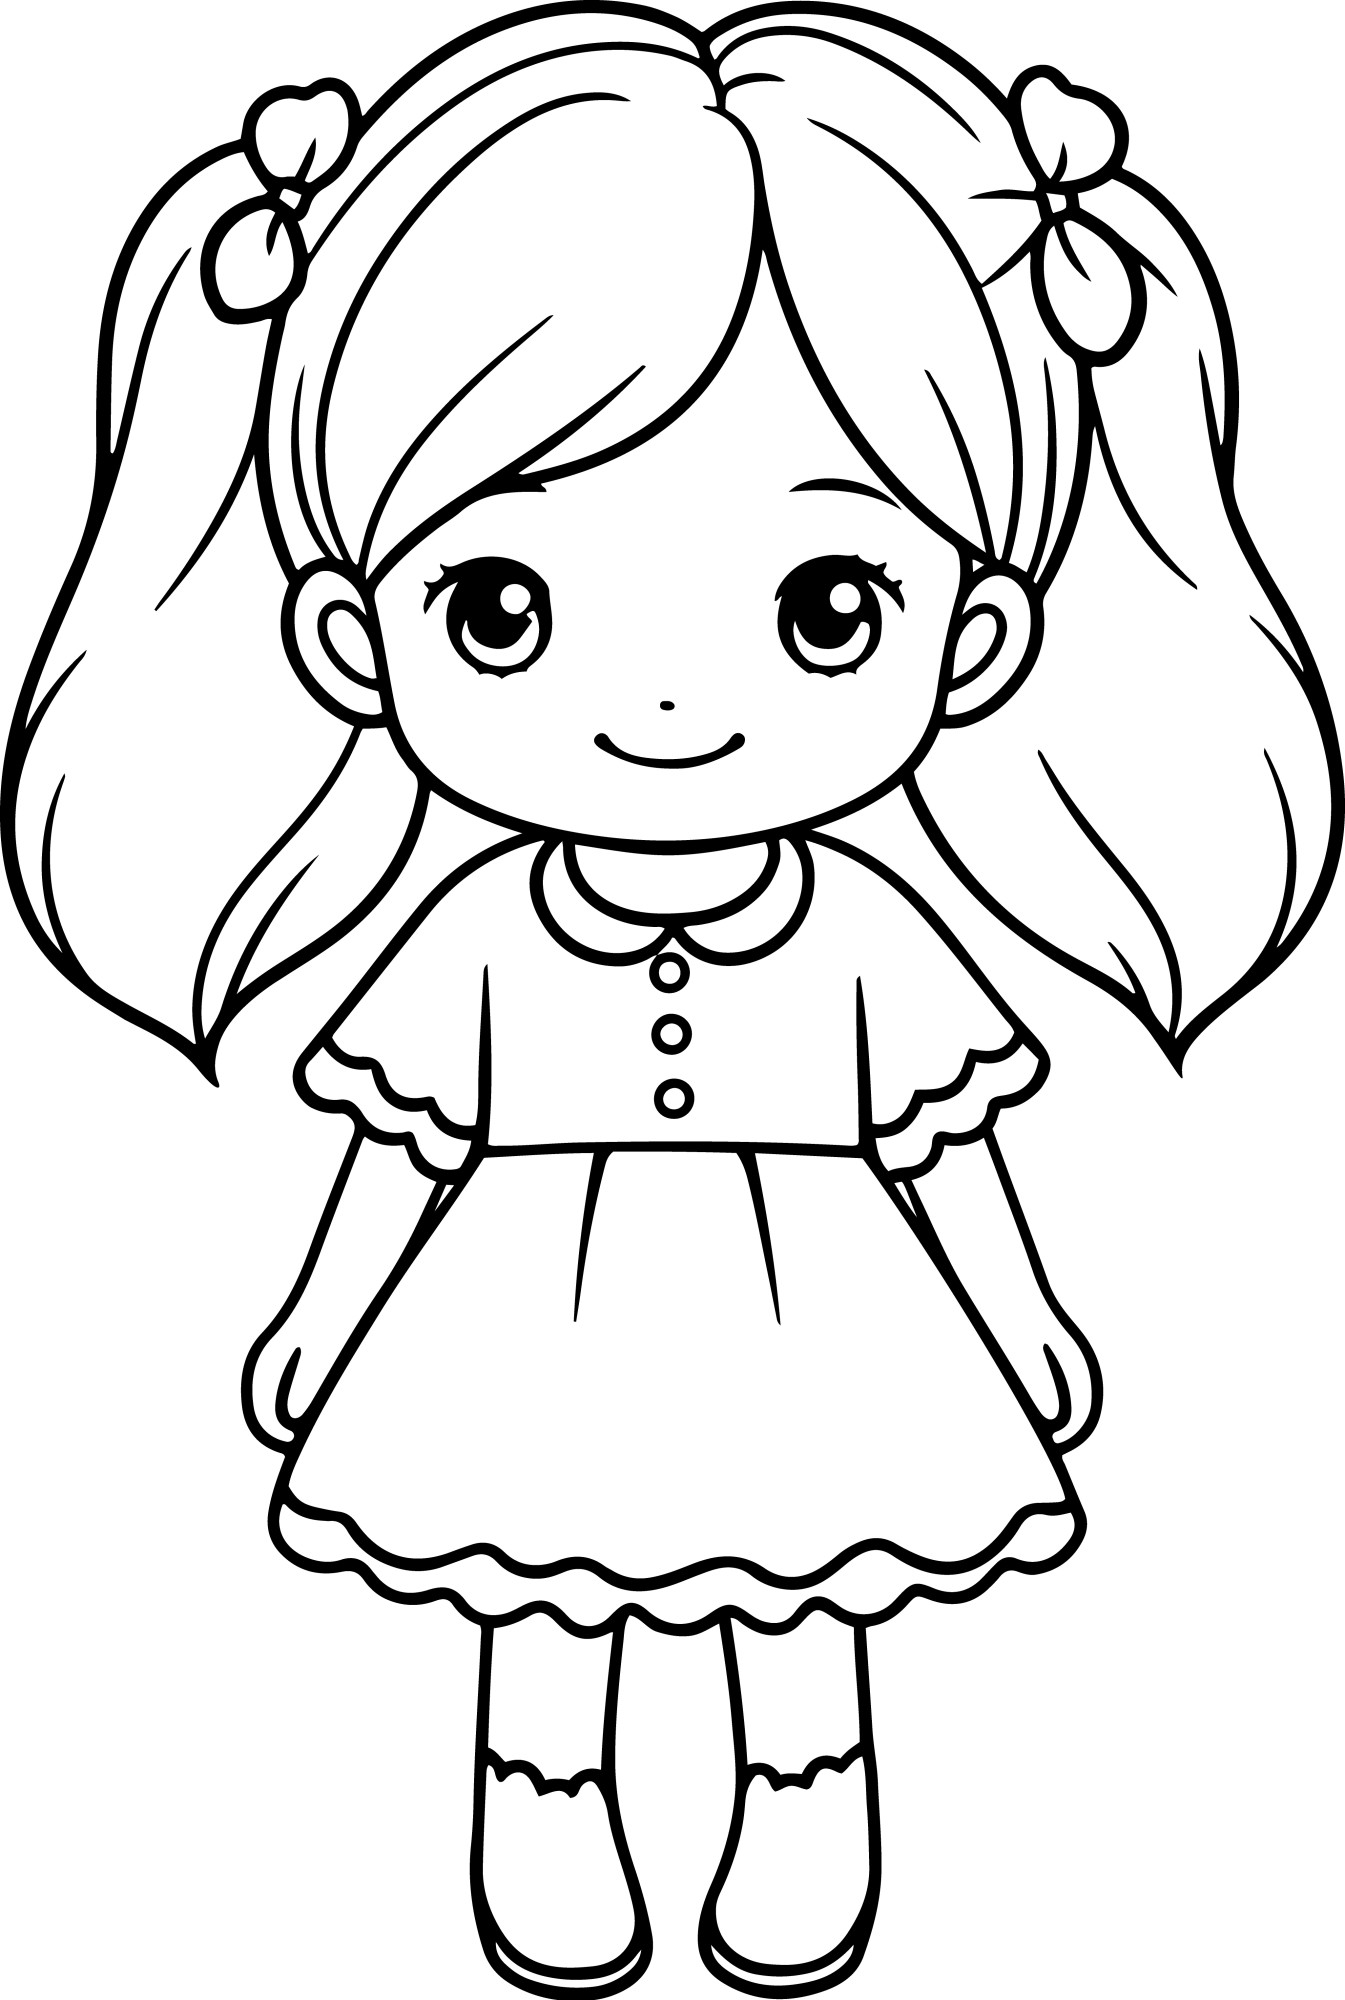 Раскраска для детей: кукла девочки с улыбкой на лице «Улыбчивая куколка»